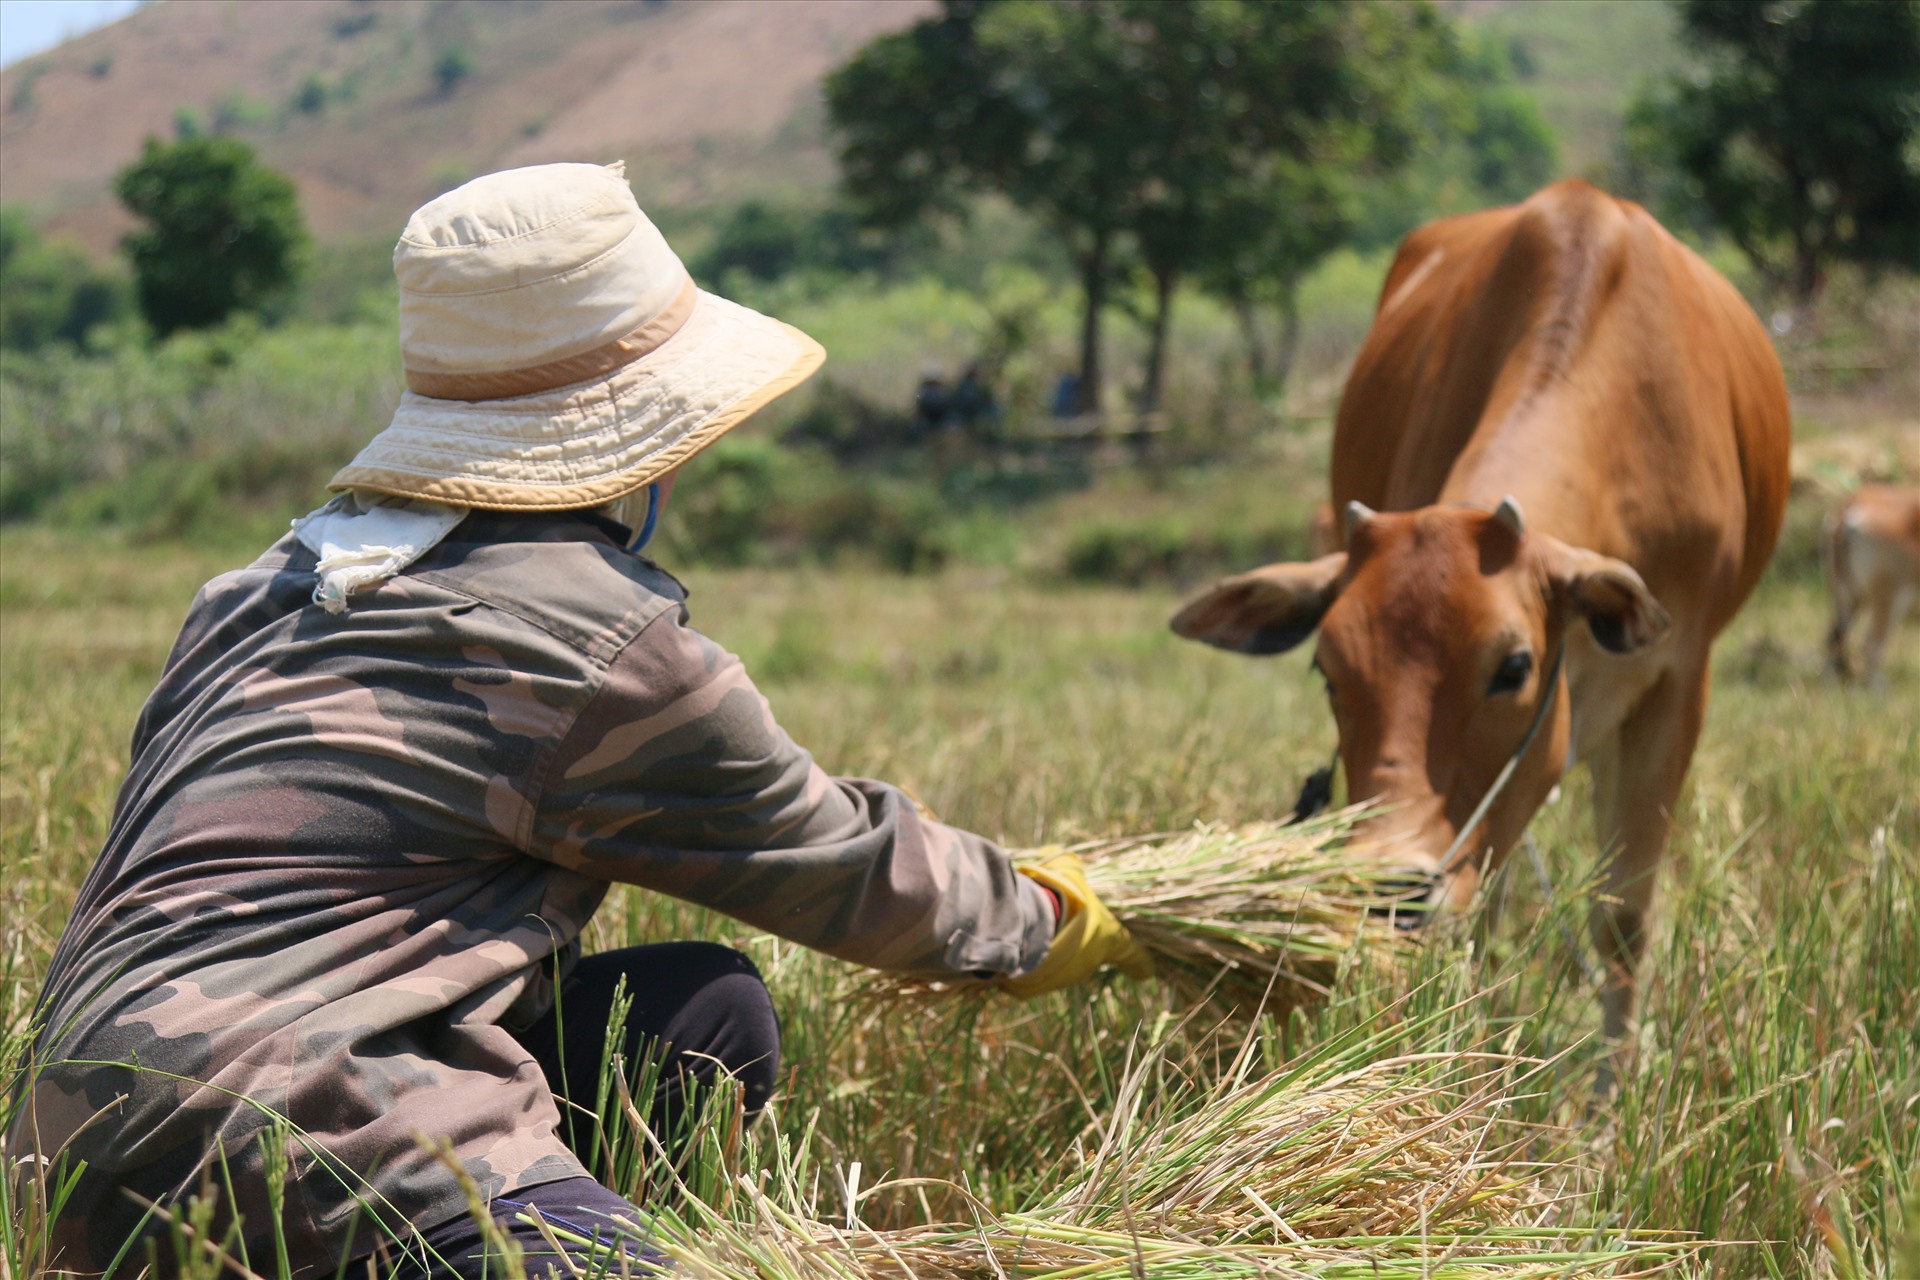 Thời điểm hiện tại, không chỉ người dân ở xã Cư Pui cắt lúa chết khô cho bò ăn, một số xã khác trong huyện cũng chung tình cảnh tương tự.